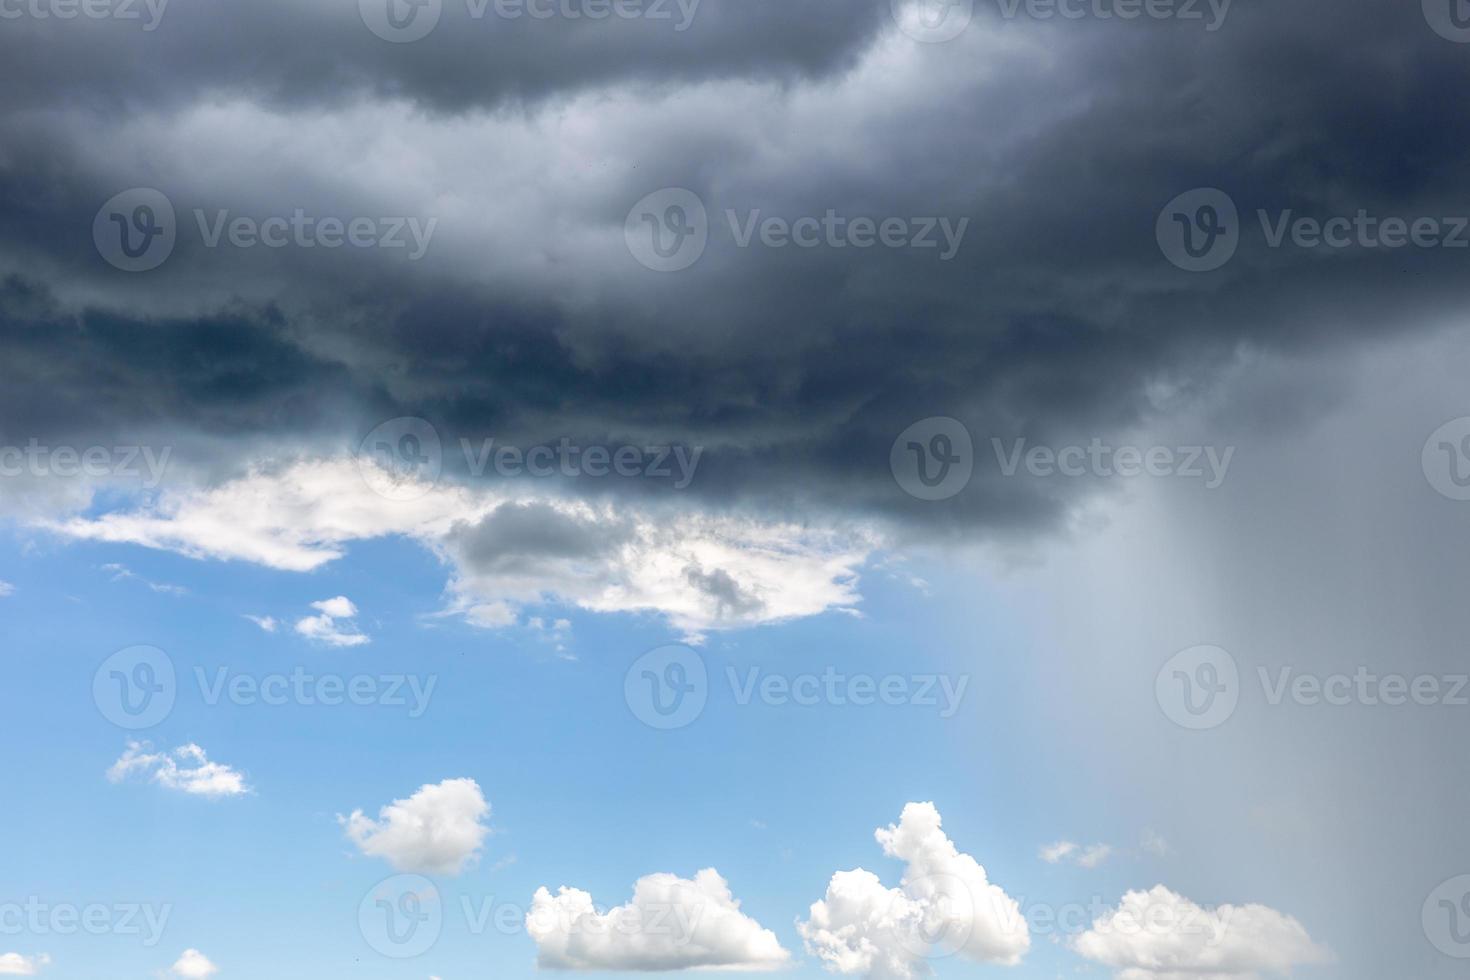 nuvola di pioggia. cambiamento climatico. diverse situazioni climatiche in un'unica immagine. foto